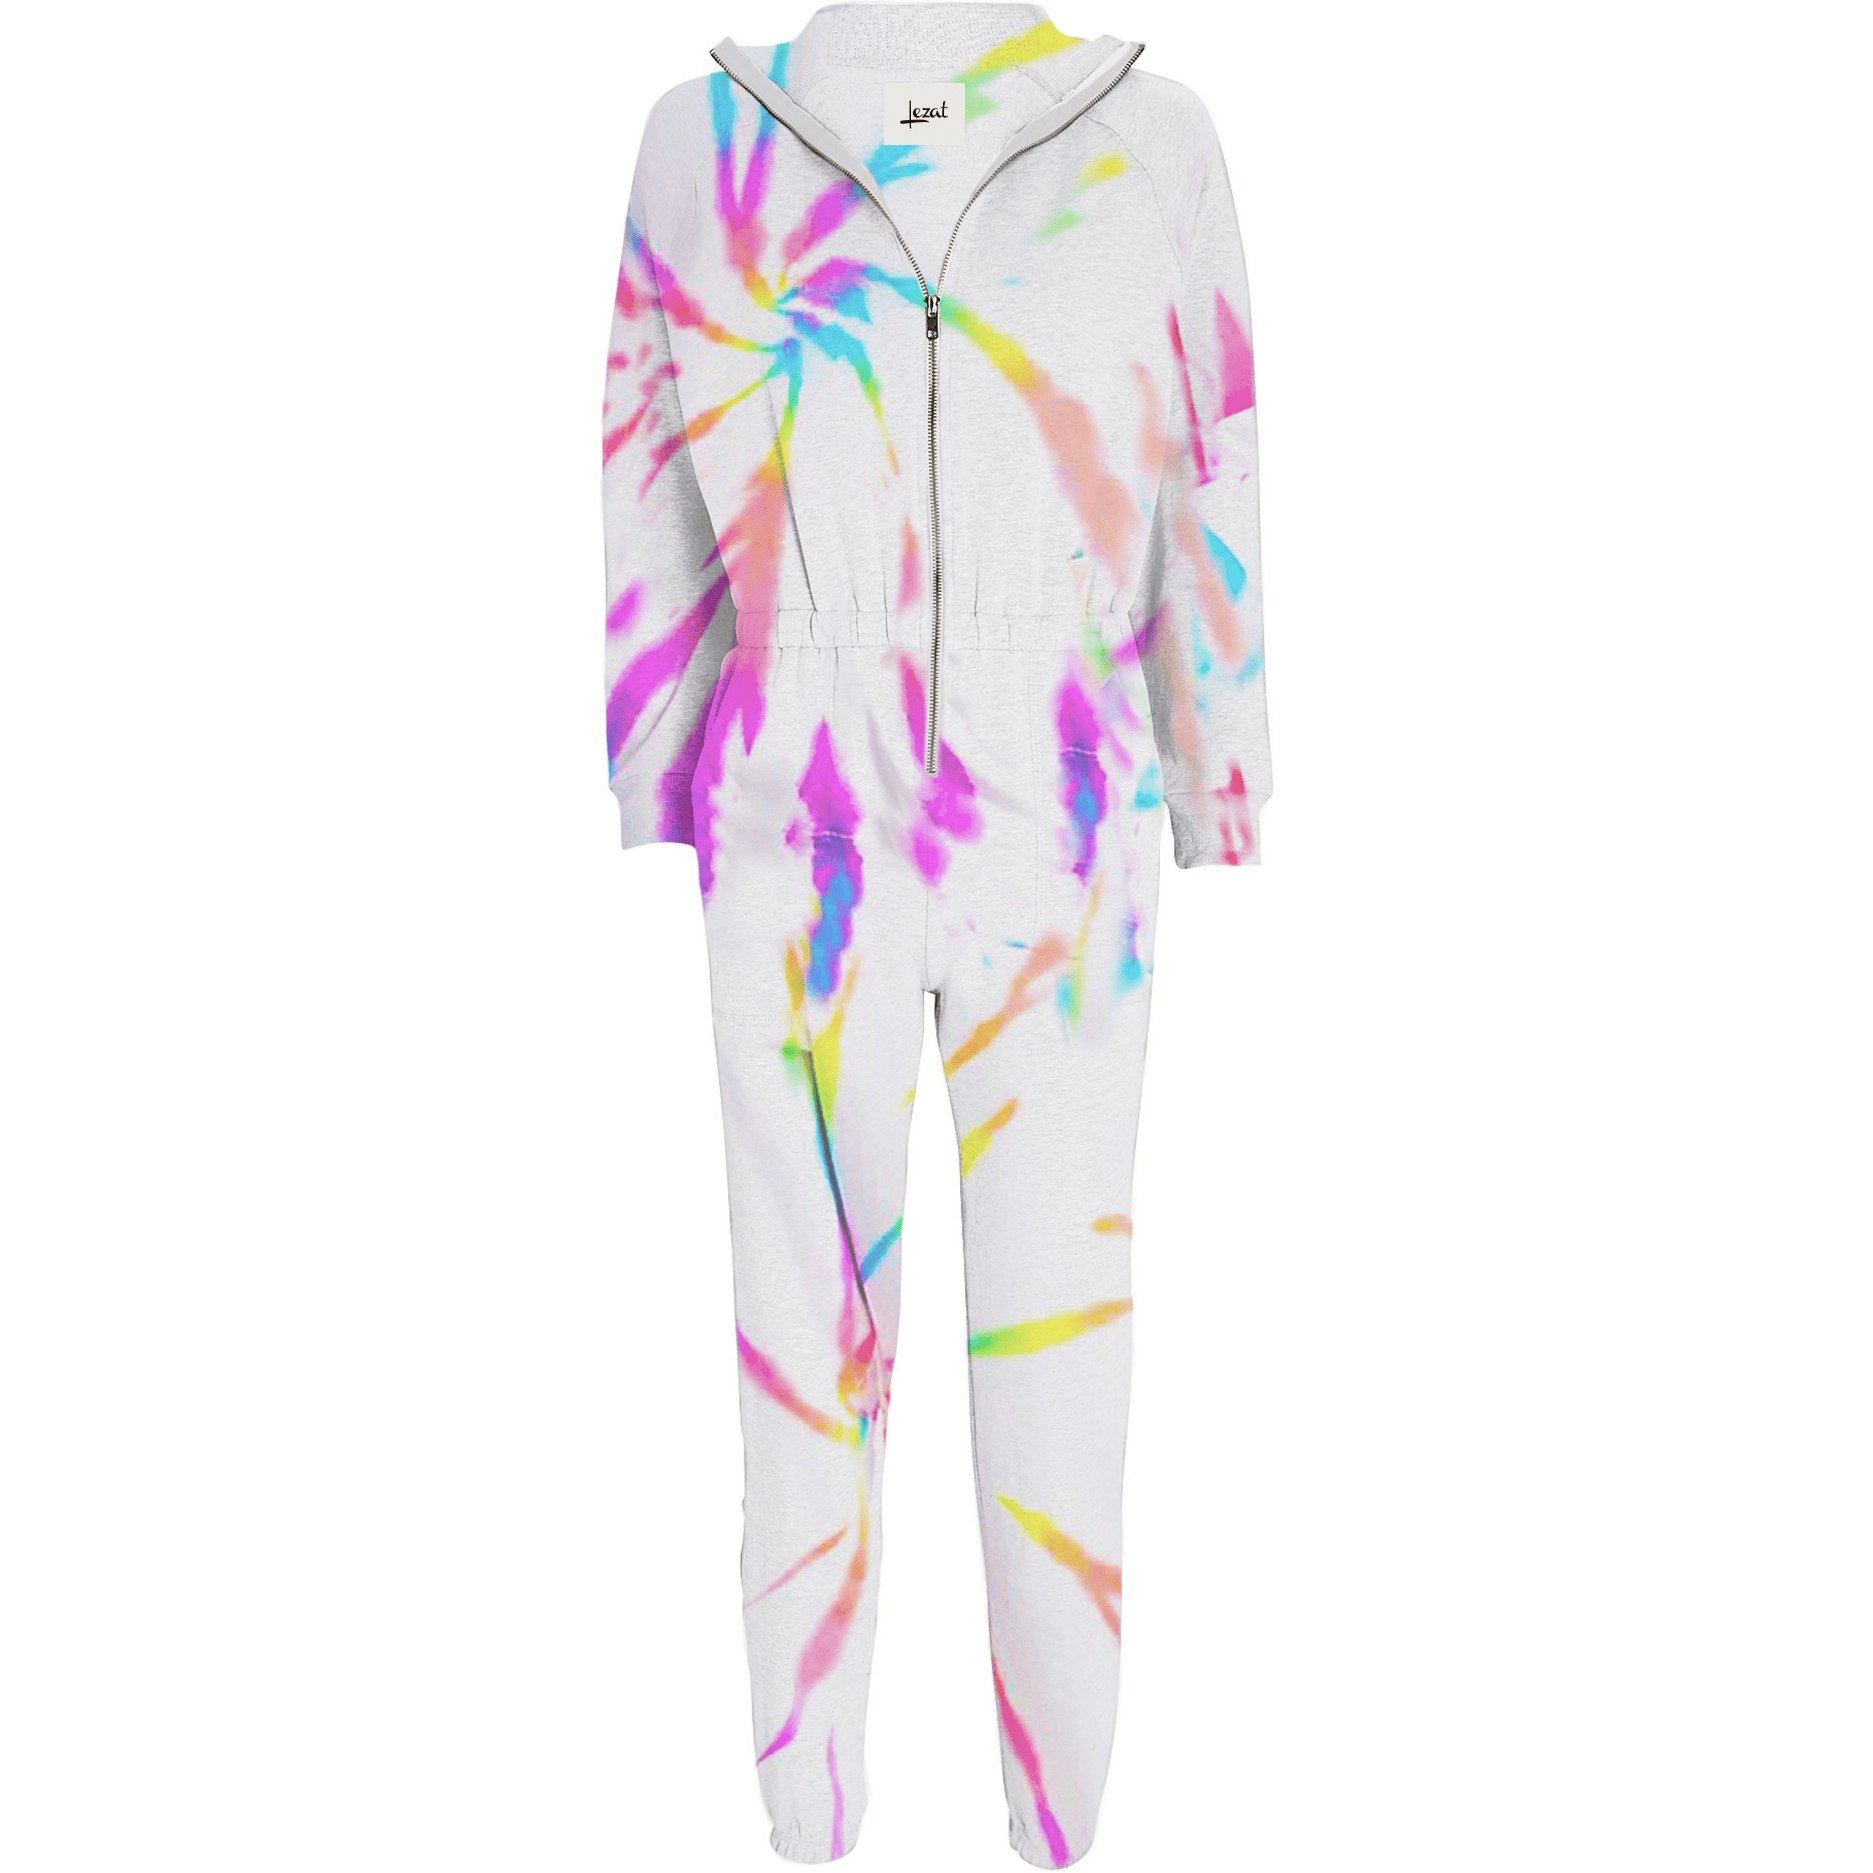 Lezat Women's Restore Soft Terry Jumpsuit - Neon Tie Dye In Multi